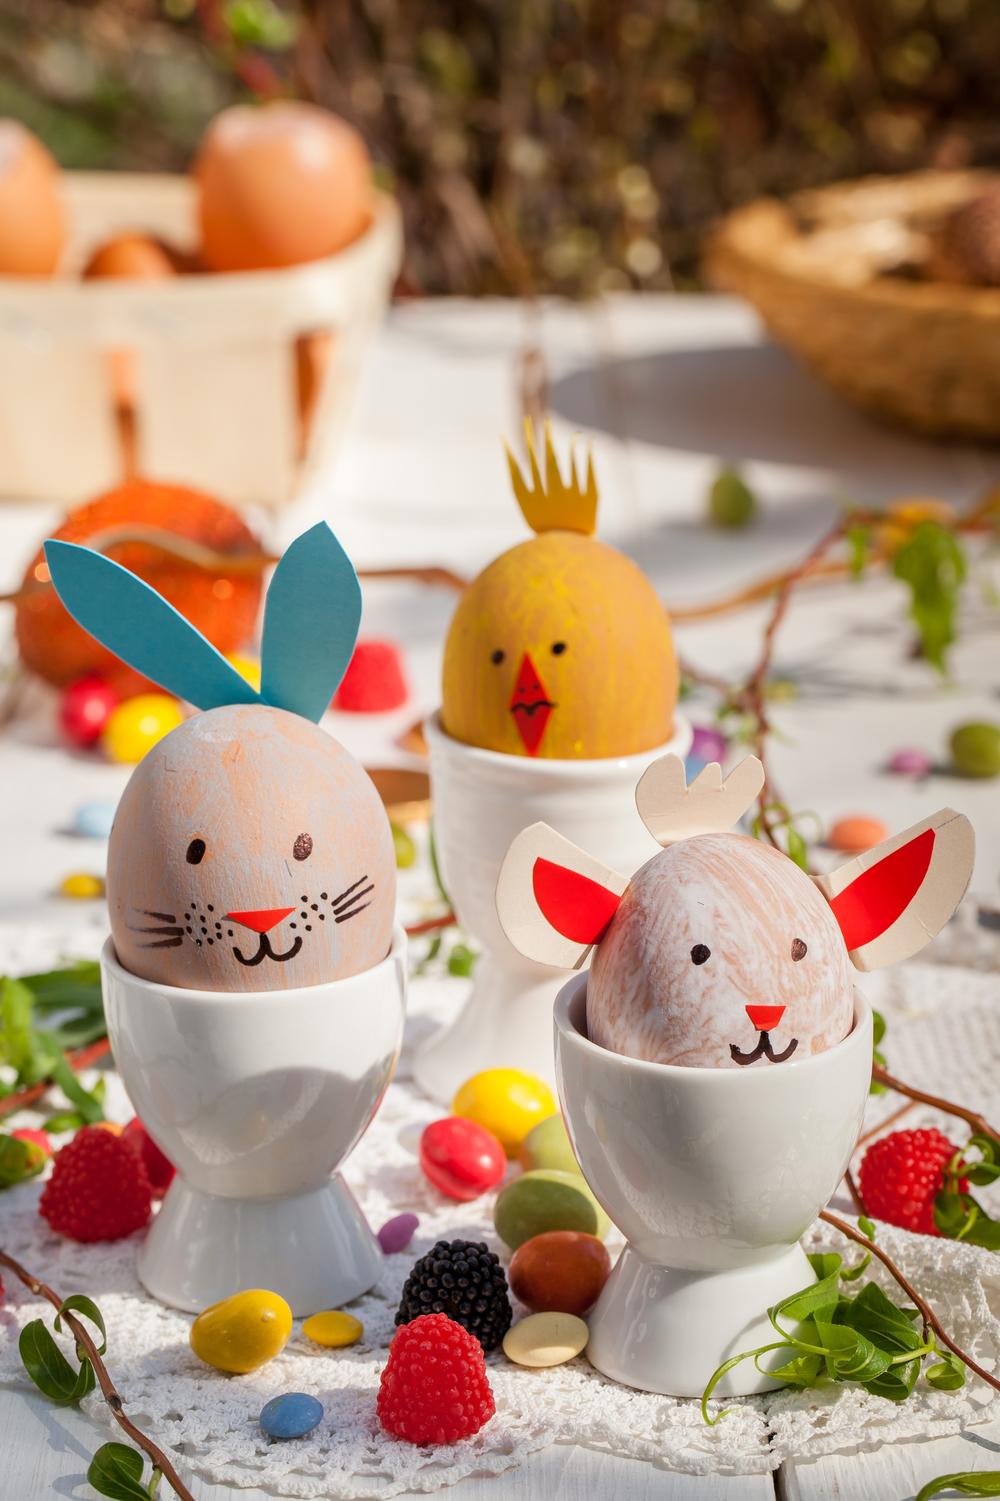 Ukoliko još uvek niste odlučili na koji način da oslikate jaja ove godine, evo nekoliko ideja.